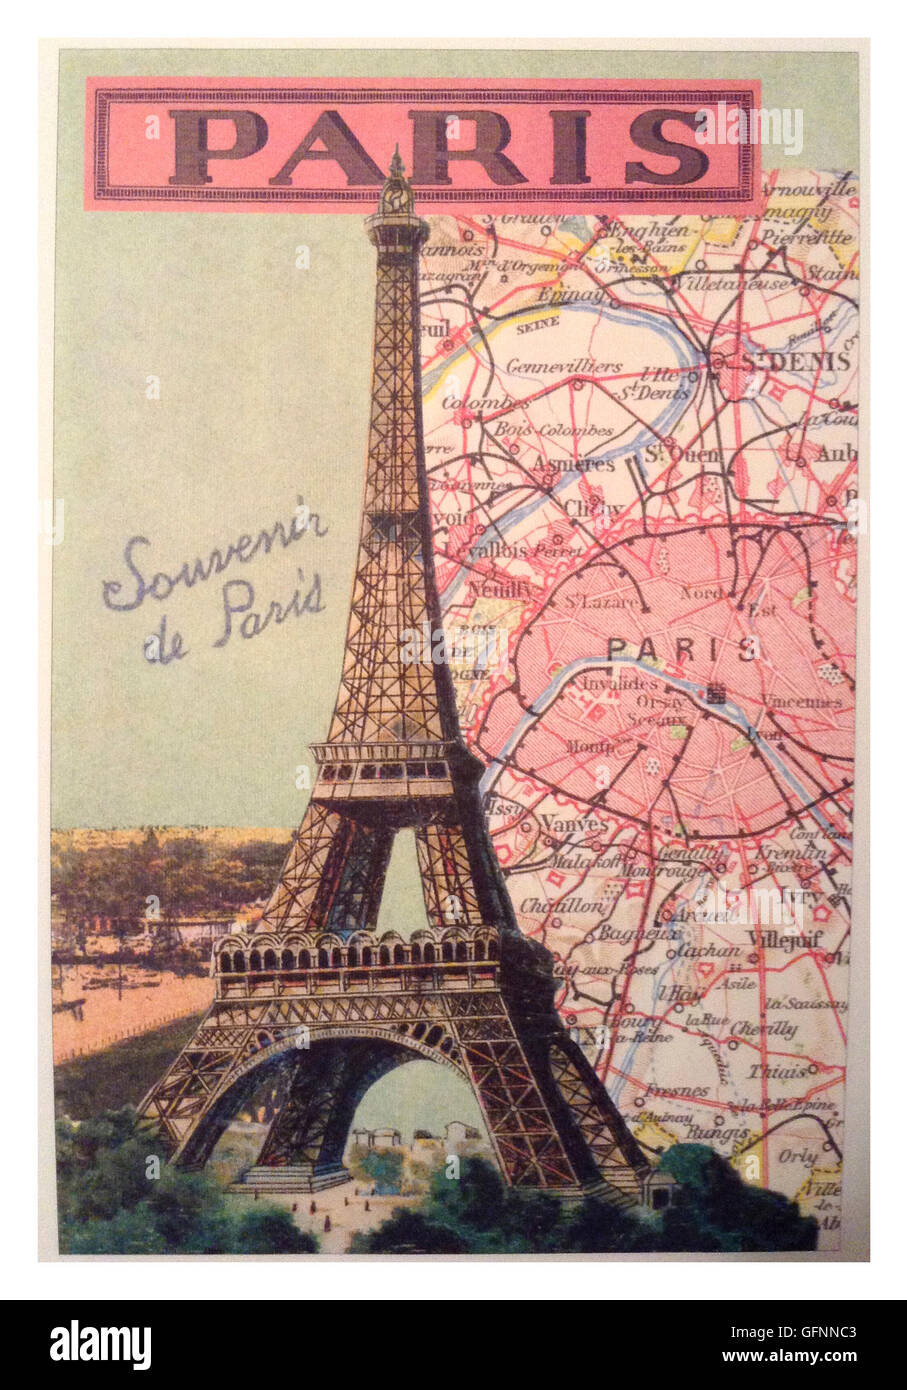 1900's retro vintage travel poster for Paris and The Eiffel Tower - 'souvenir de Paris' Stock Photo